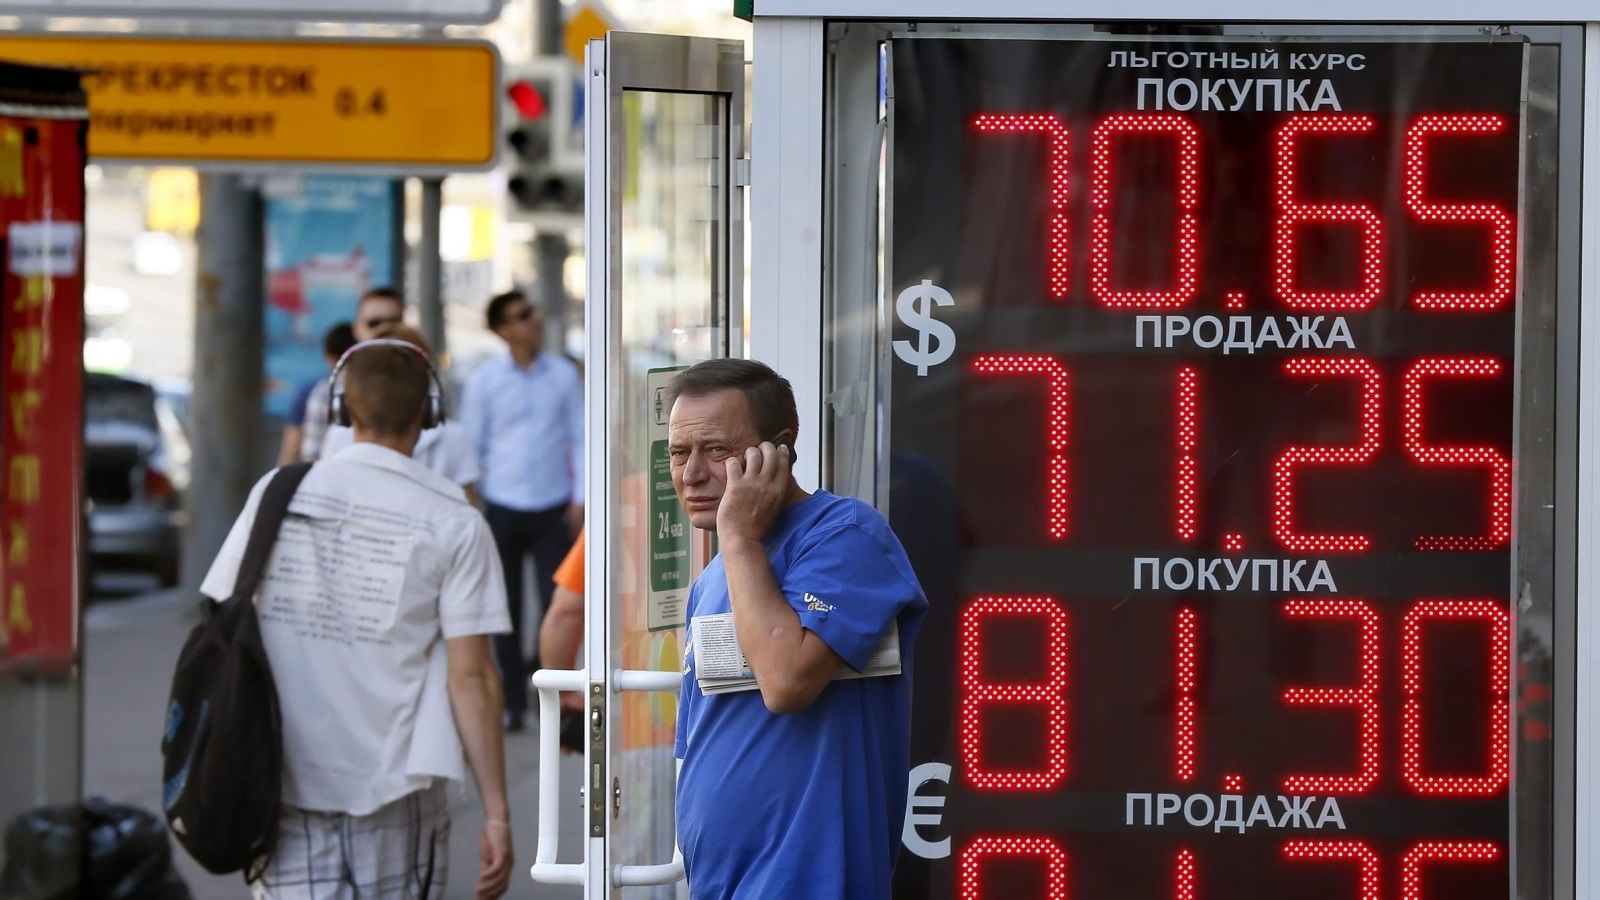 سعر العملة الروسية الروبل تعافى بعد انهيارها في خريف 2014 (الأوروبية-أرشيف)